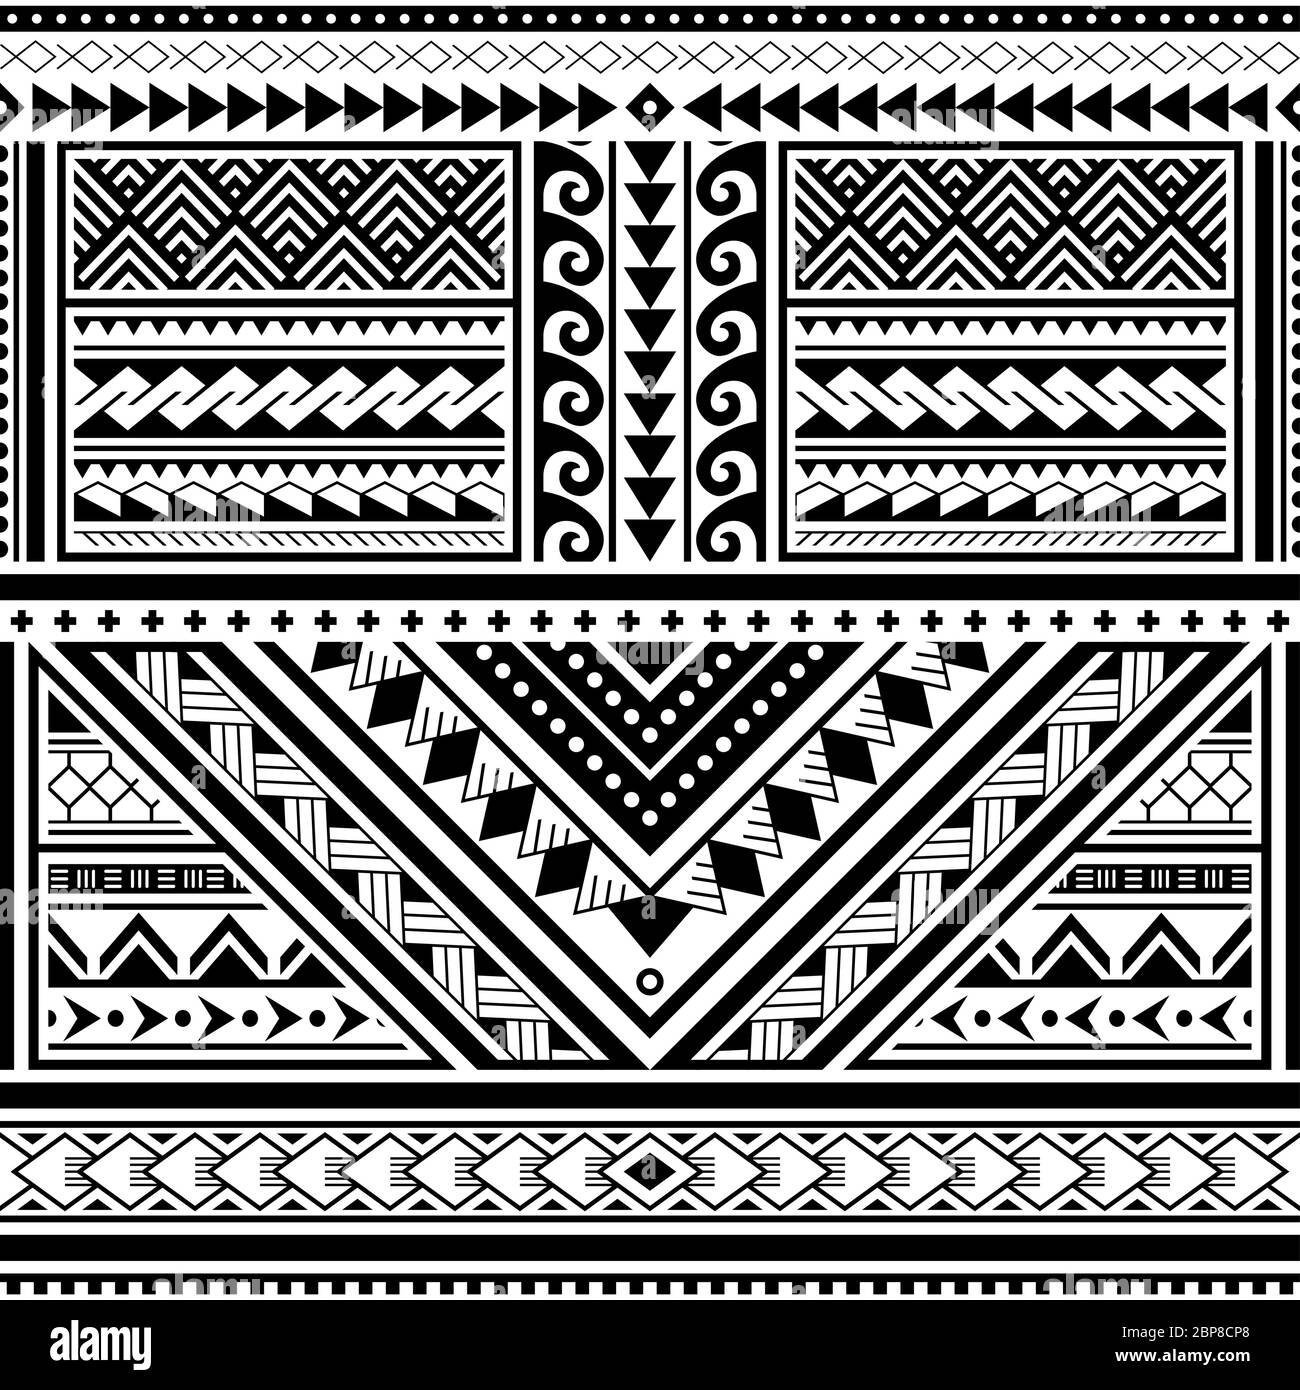 Motif vectoriel sans couture en tatouage polynésien, motif tribal hawaïen inspiré de l'art géométrique traditionnel des îles de l'océan Pacifique Illustration de Vecteur